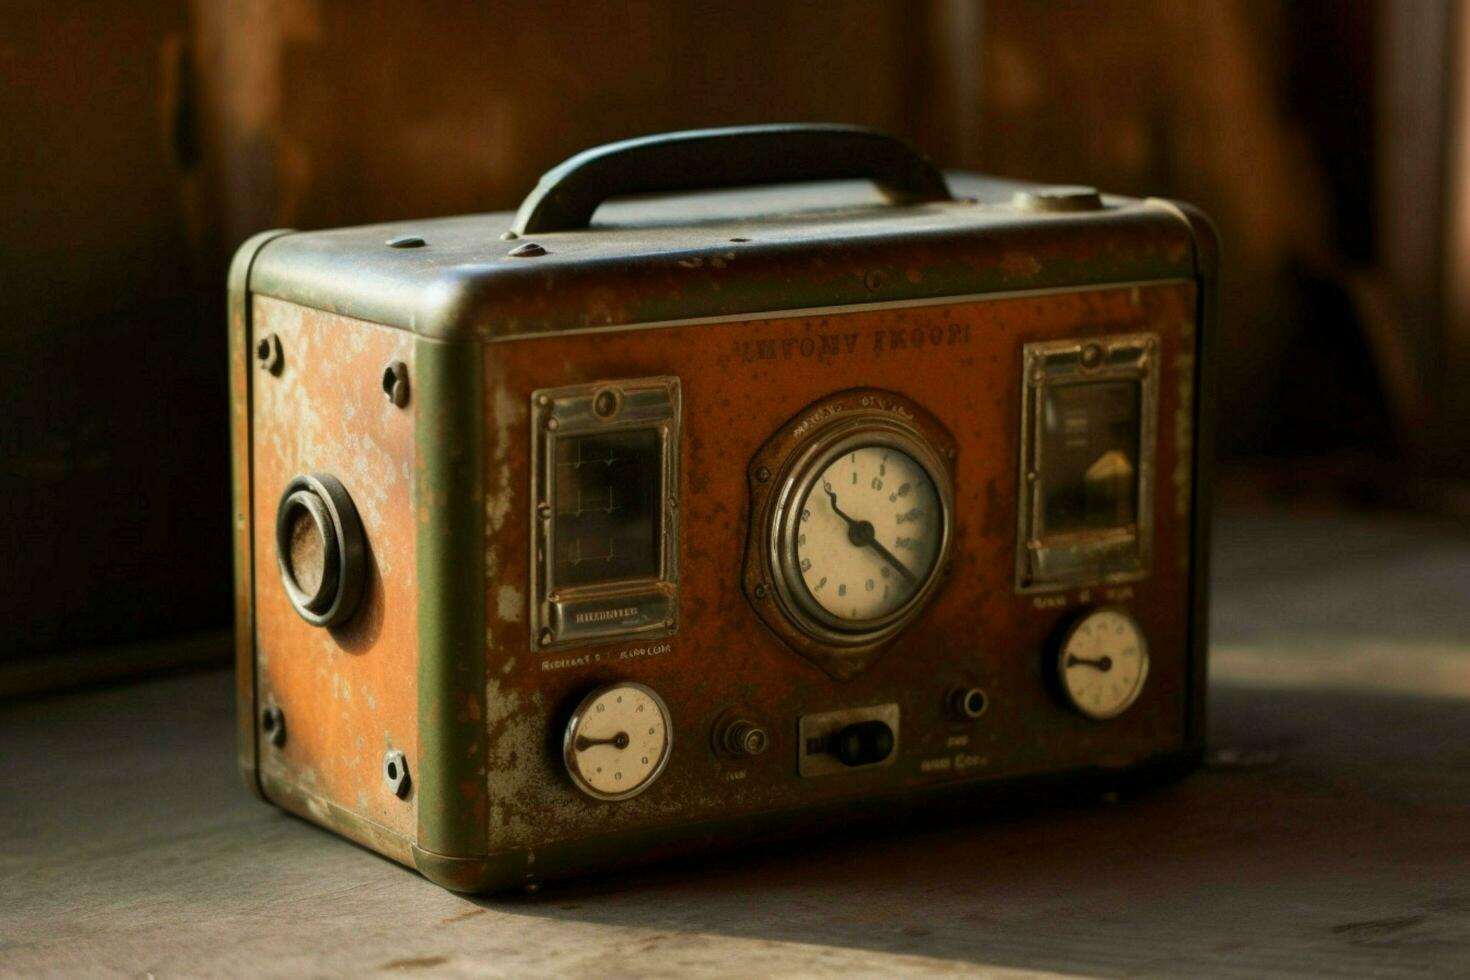 ein alt gestaltet Radio mit ein rostig Knopf foto